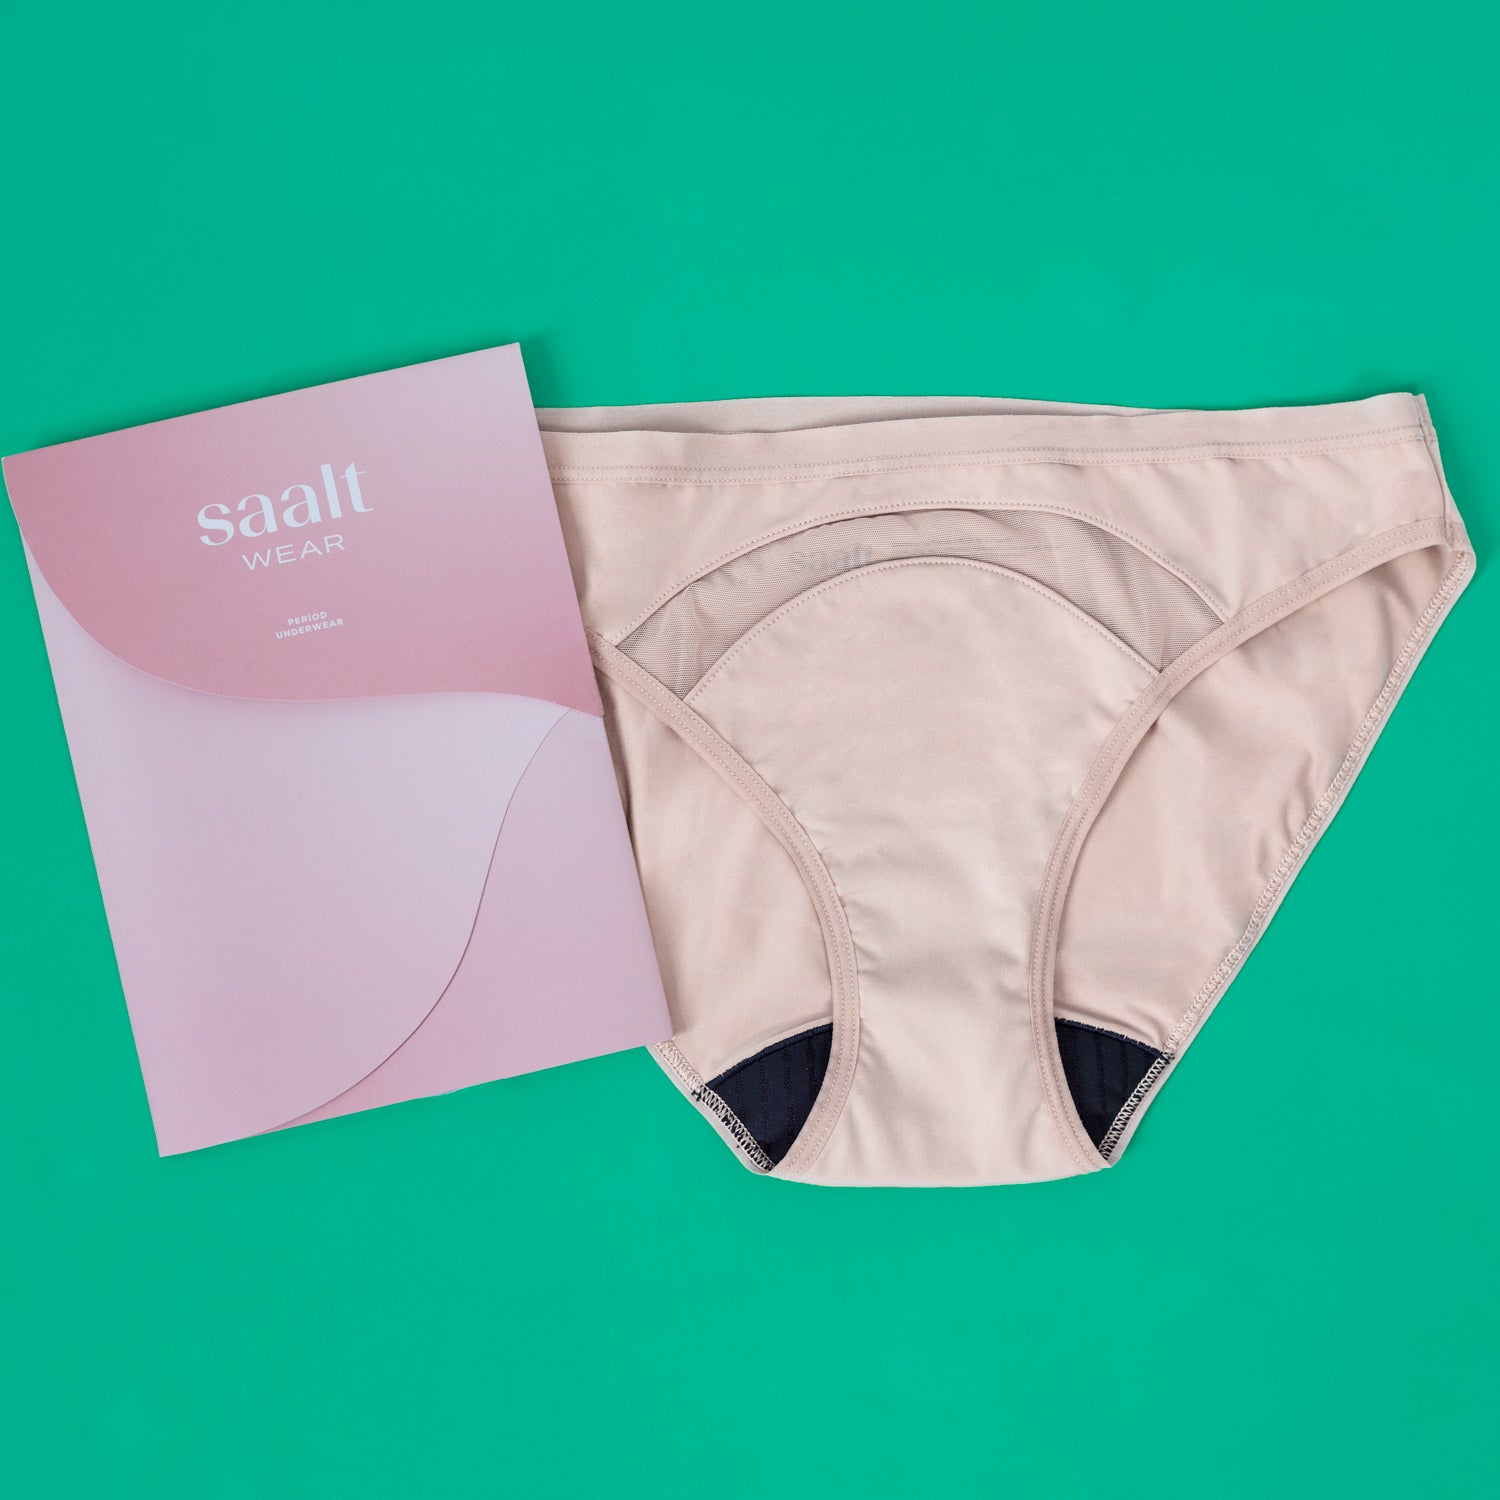 saalt Modal Comfort Thong Period Underwear - Reusable, Leakproof